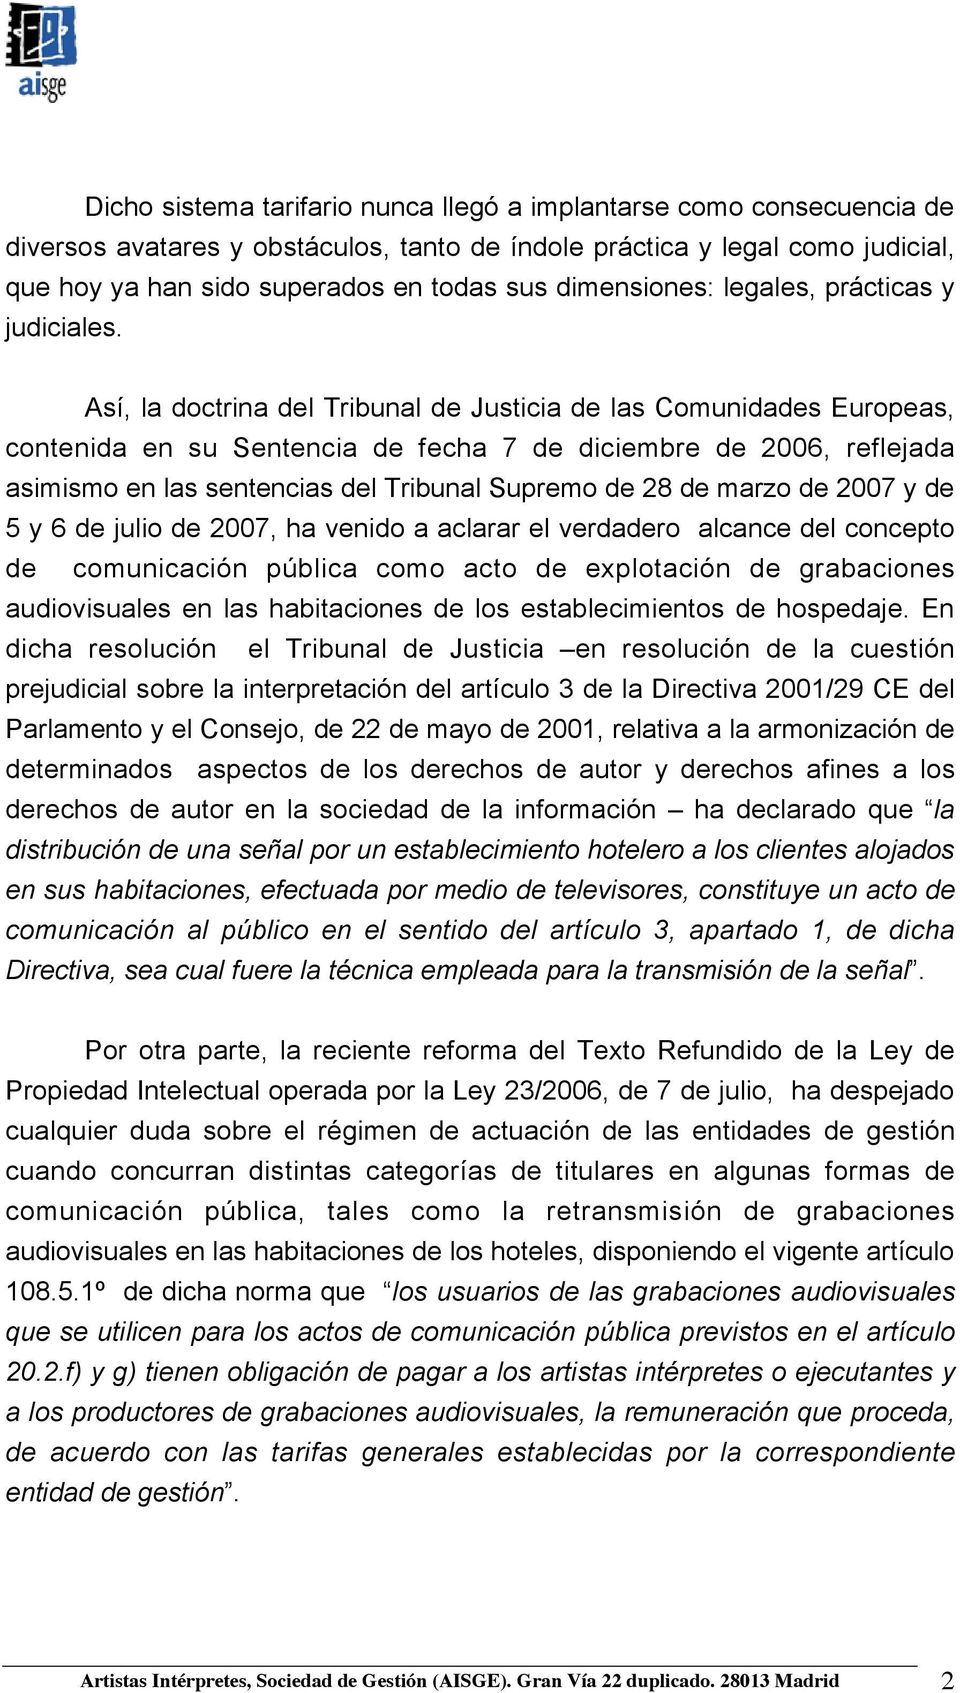 Así, la doctrina del Tribunal de Justicia de las Comunidades Europeas, contenida en su Sentencia de fecha 7 de diciembre de 2006, reflejada asimismo en las sentencias del Tribunal Supremo de 28 de